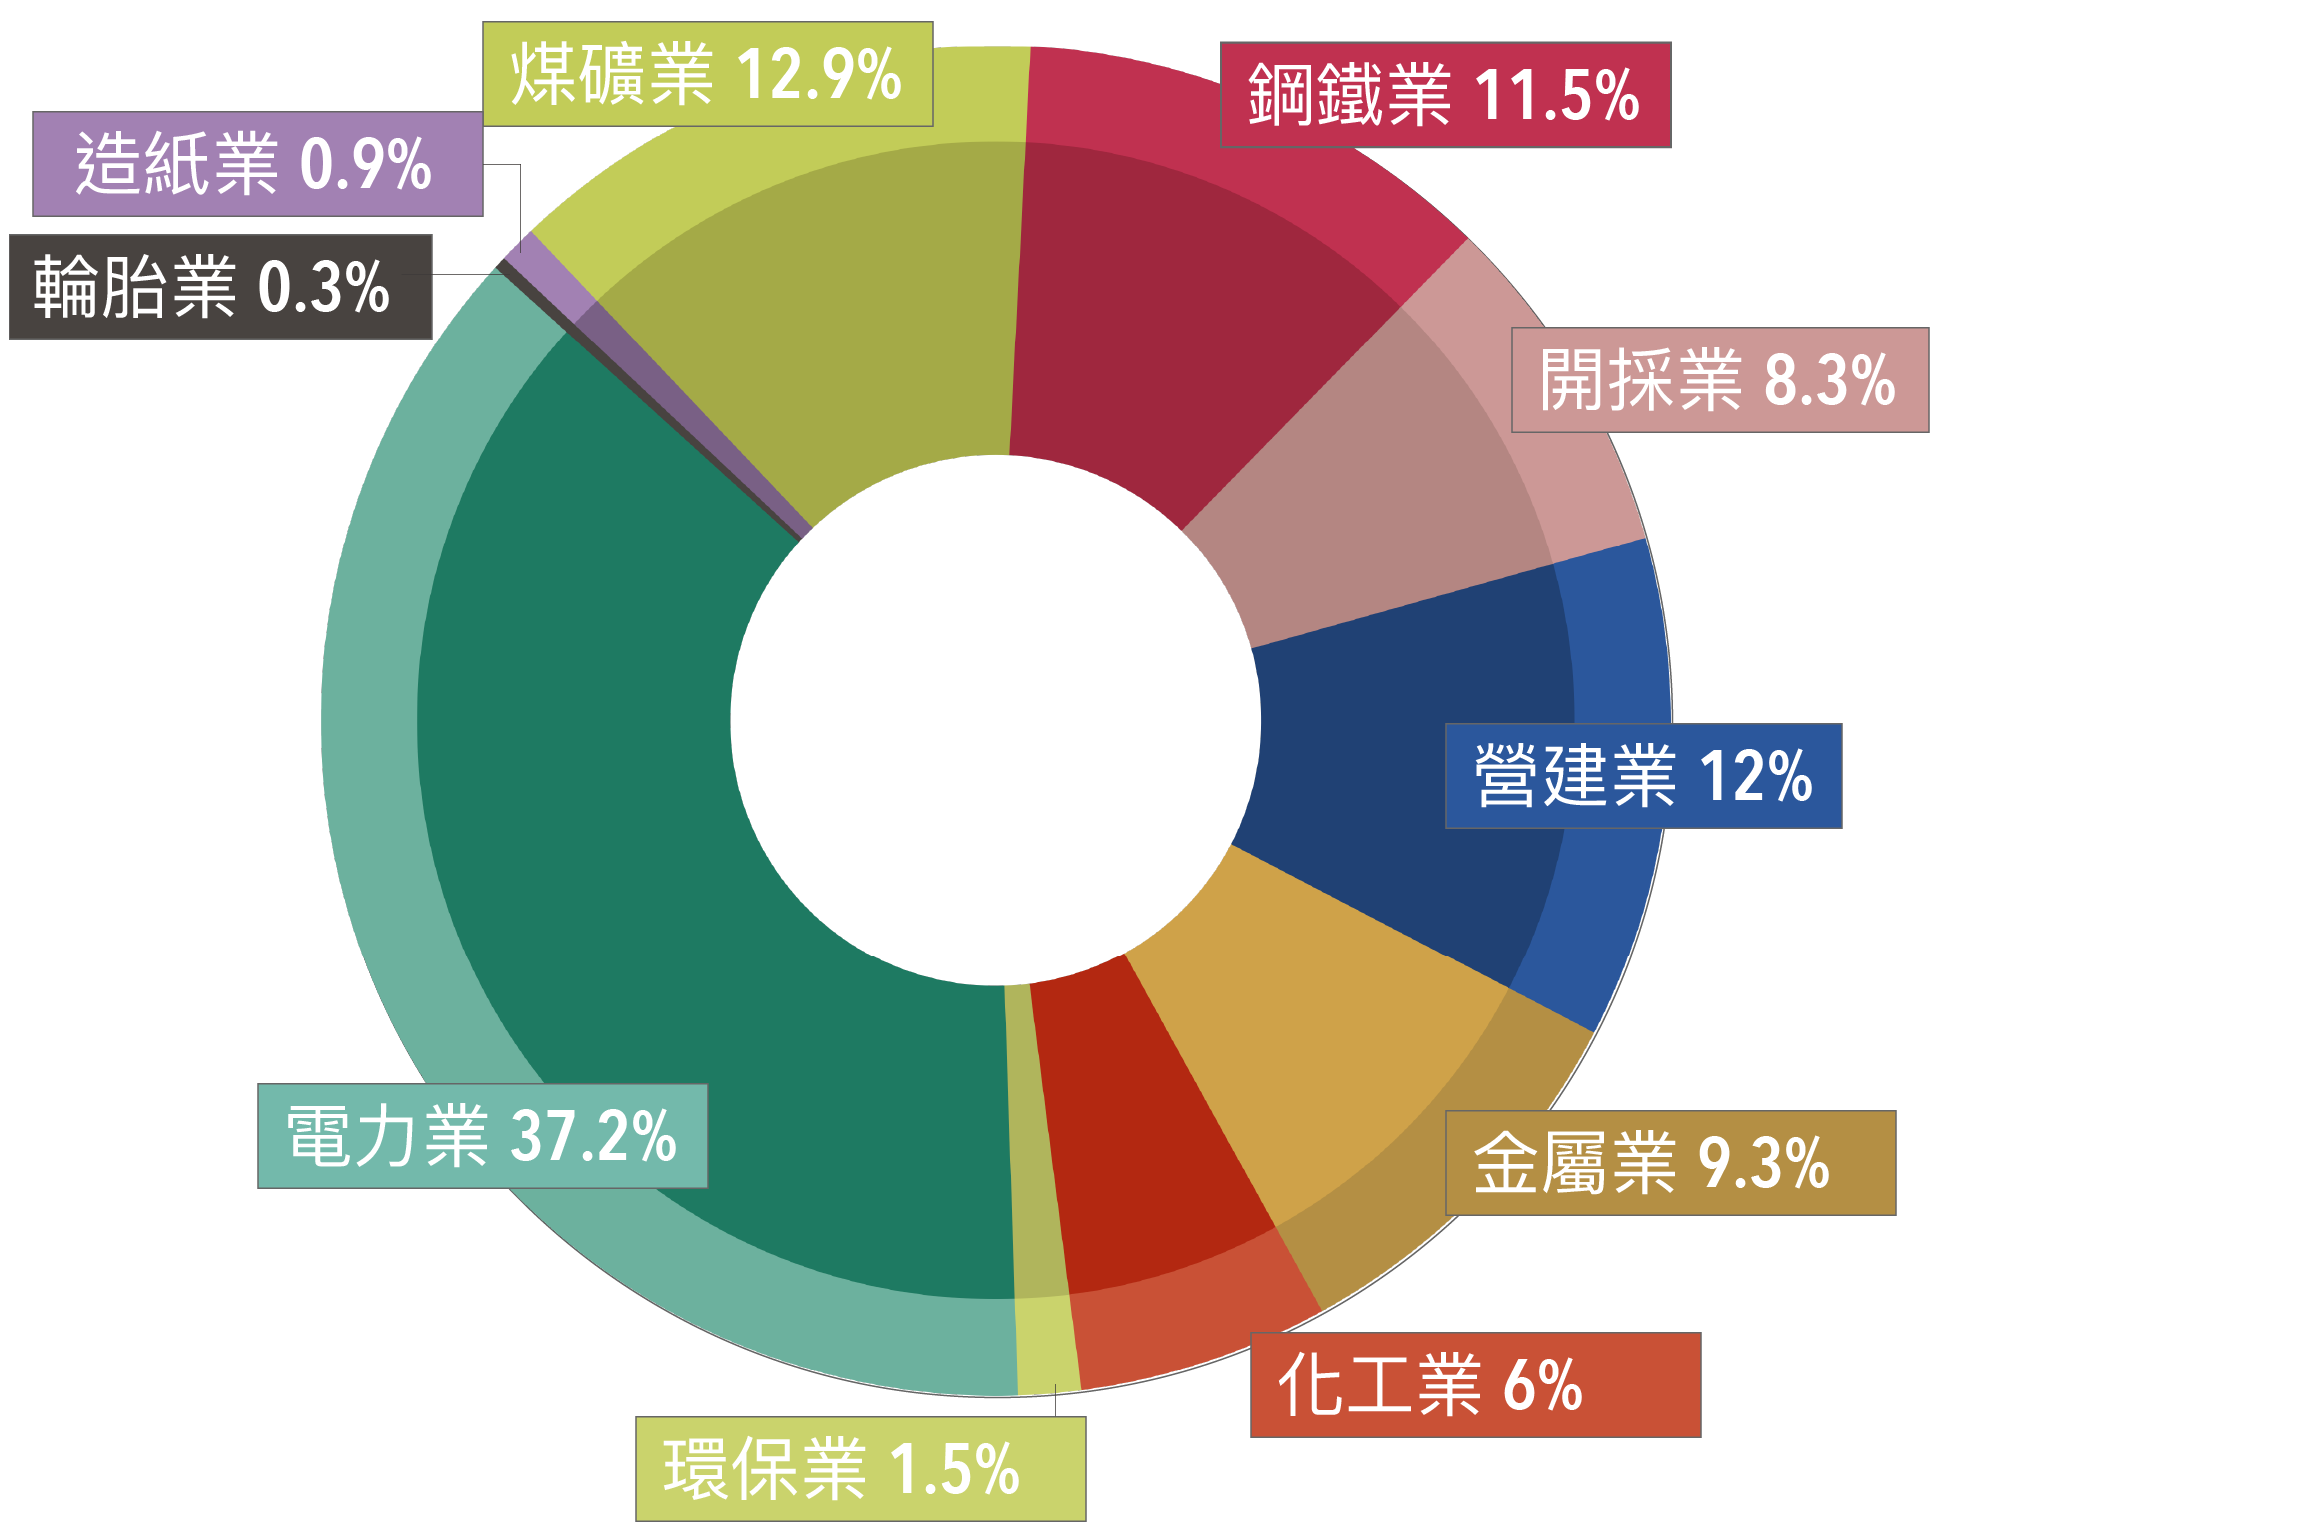 台泥協助處理各行各業廢棄物百分比 - 中國大陸